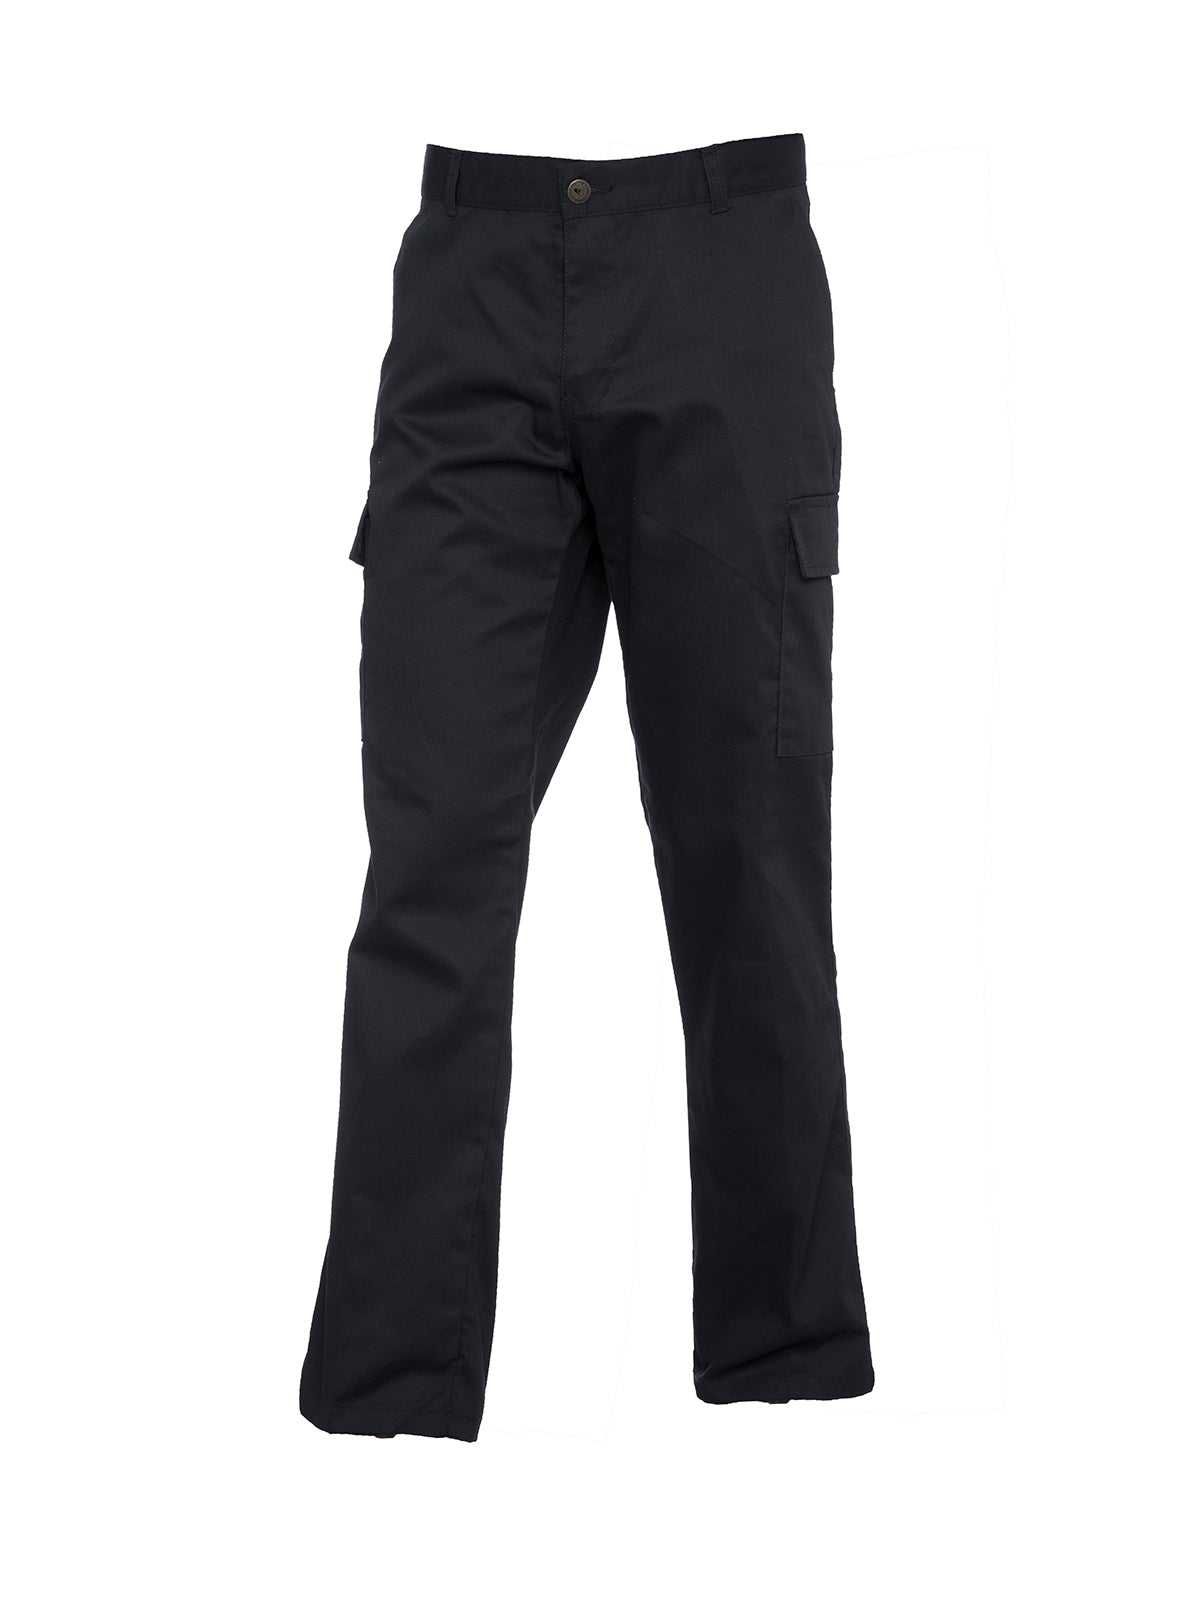 Uneek Ladies Cargo Trousers UC905 - Black